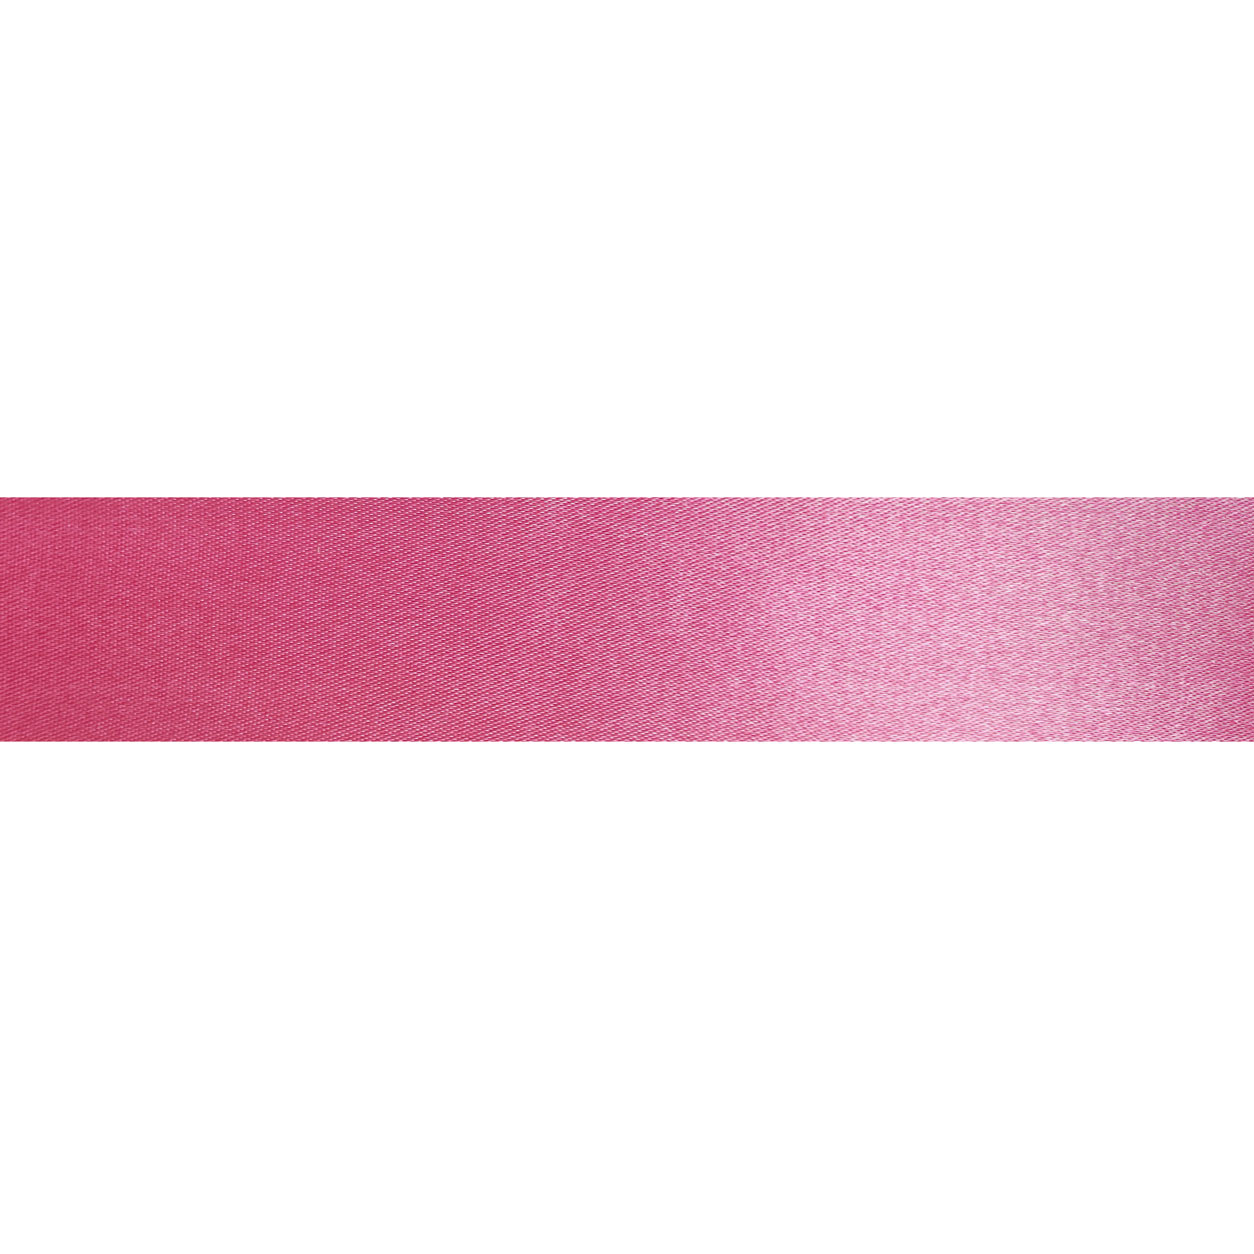 25 m nastro di raso Nero con pois bianchi Cordino Regalo 12mm larghezza Nastro per decorazioni nastro di raso Punti Puntini Tulipani rosa bianco punti decorazione nastro di raso 